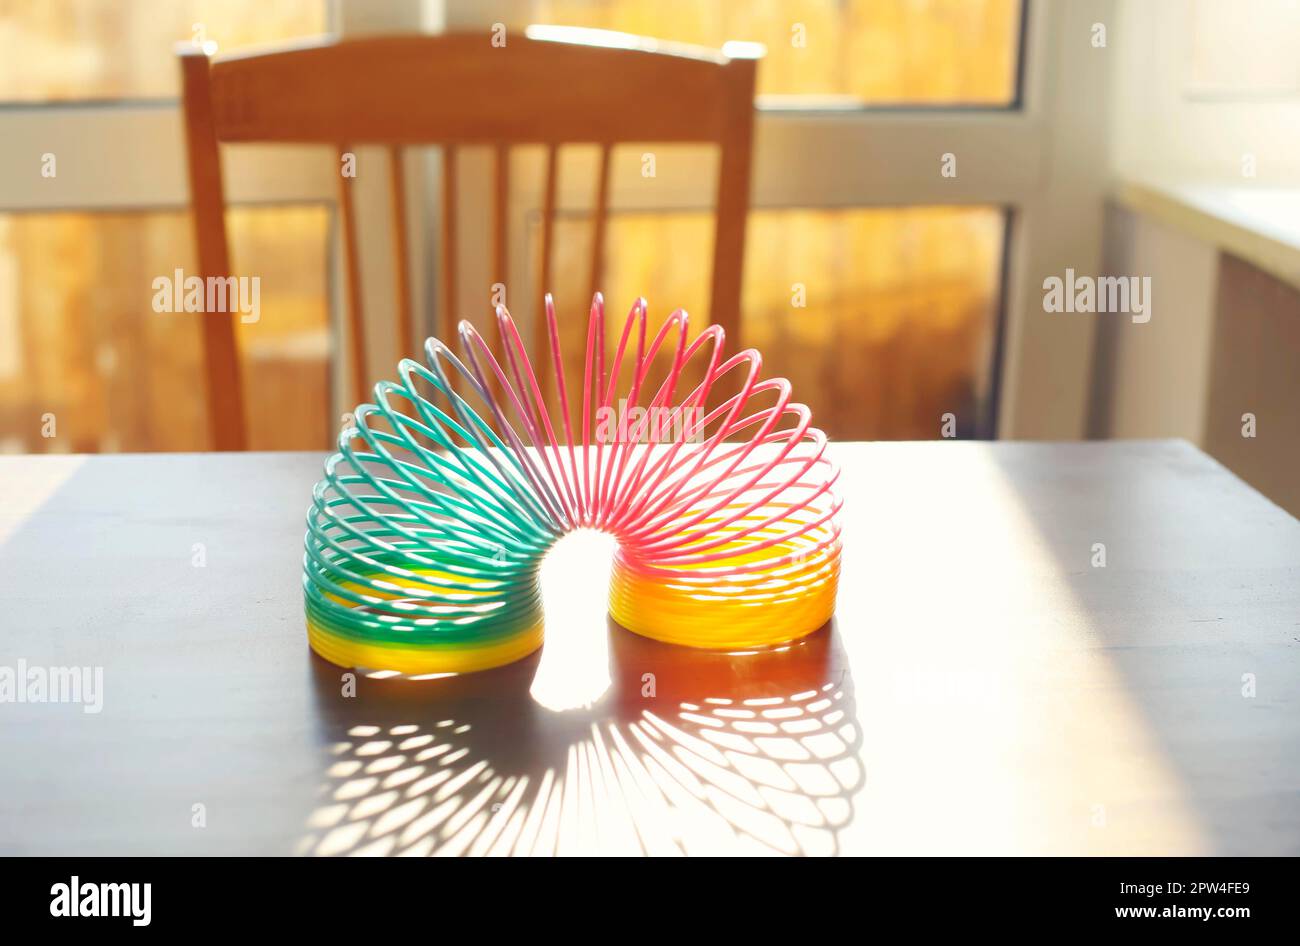 Anti-Stress-Zauberring Frühling Regenbogen Sprungspielzeug auf Tisch in sonnigen Raum zu Hause, selektive Fokus. Stressabbau und Anti-Angst-Spielzeug Konzept Stockfoto